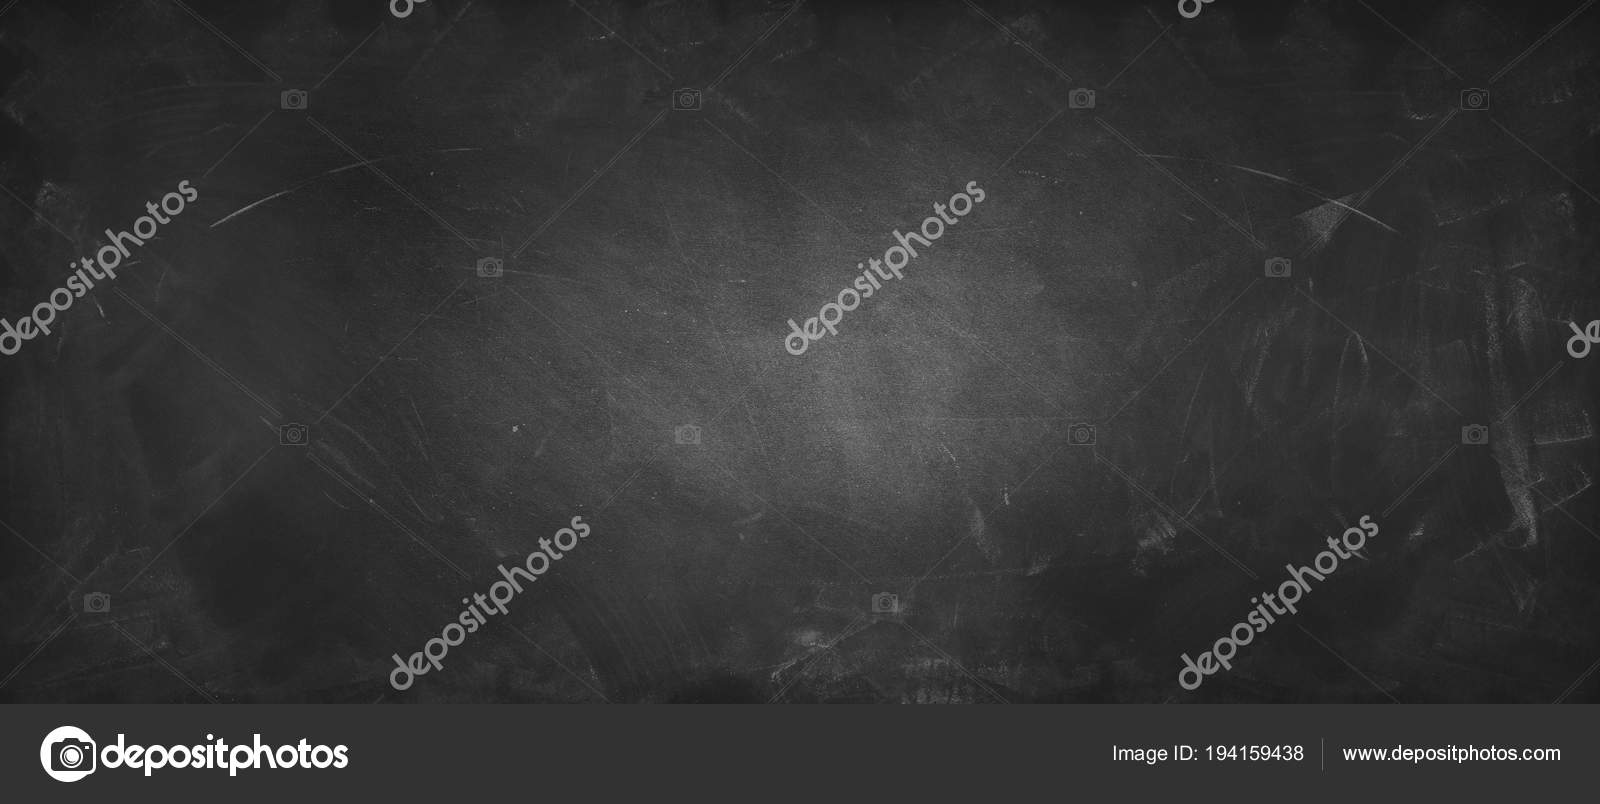 Blackboard Or Chalkboard Stock Photo By ©stillfx 194159438